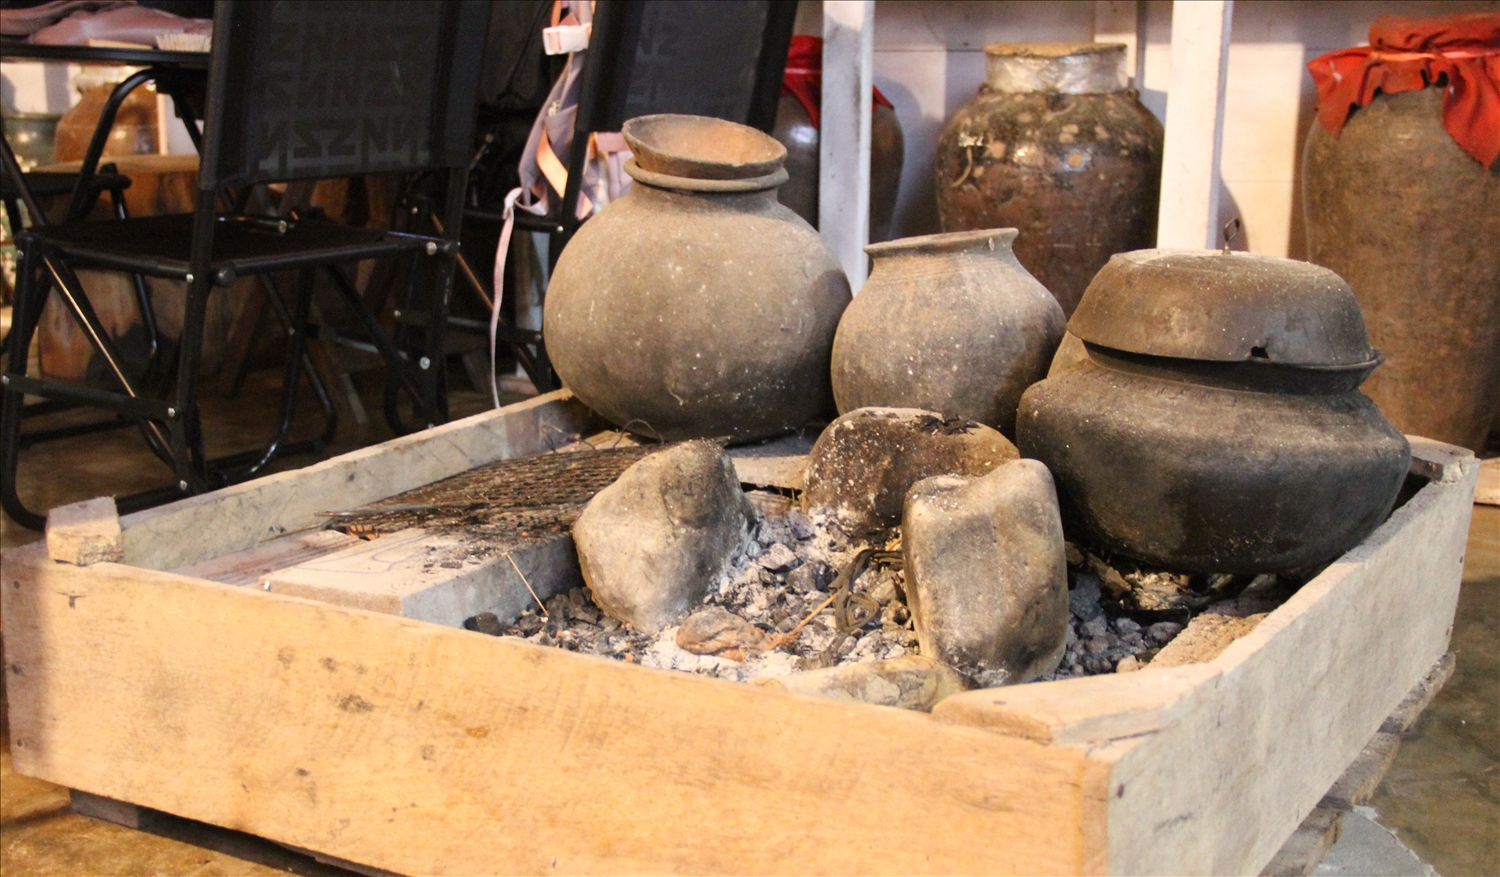 Bếp lửa truyền thống của đồng bào dân tộc Tây Nguyên đặt dưới nên nhà